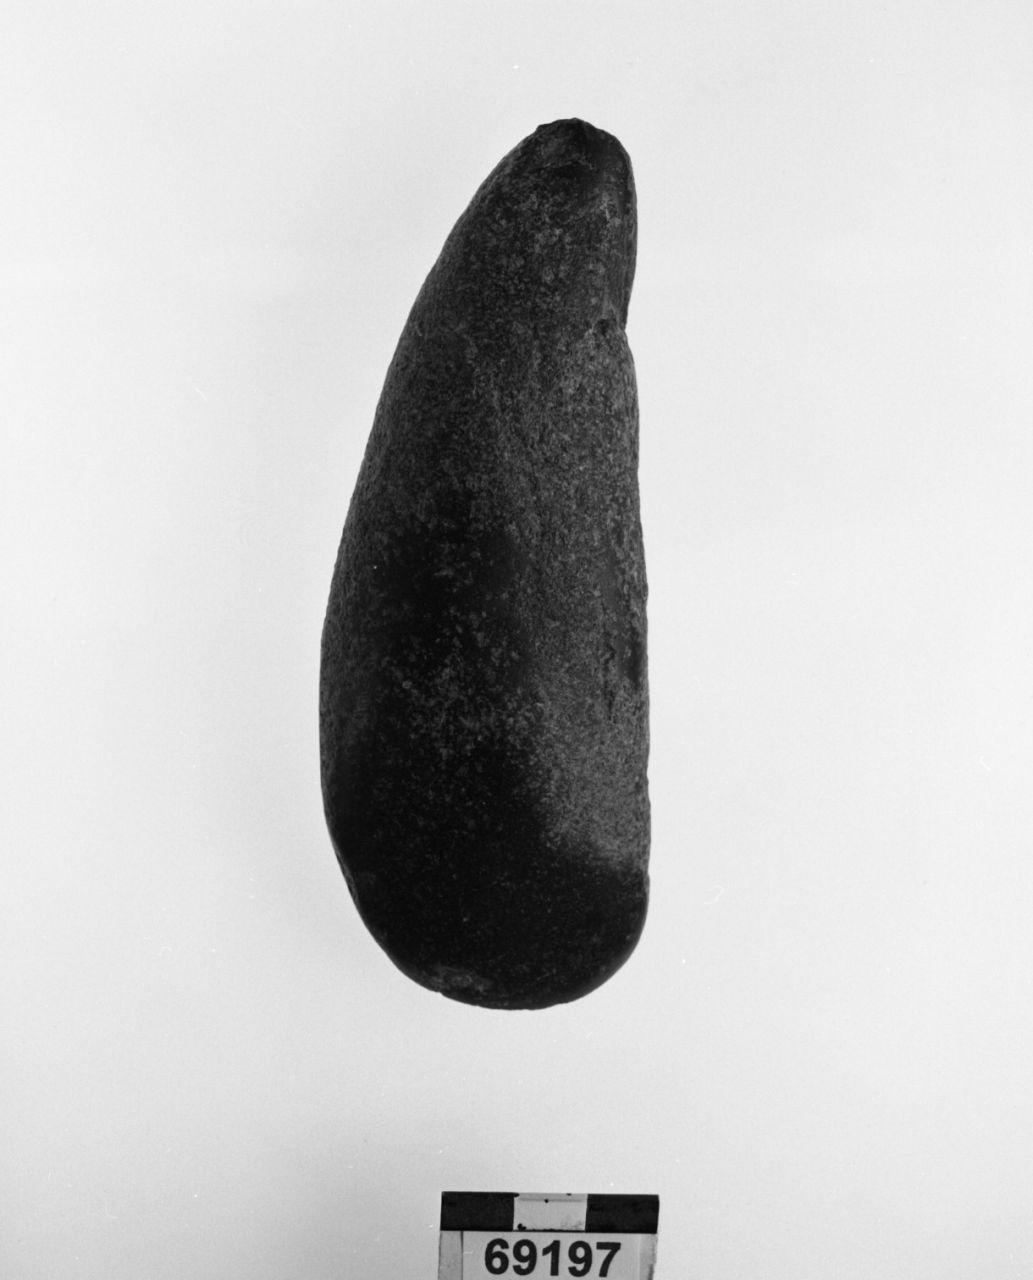 ascia (Eneolitico)